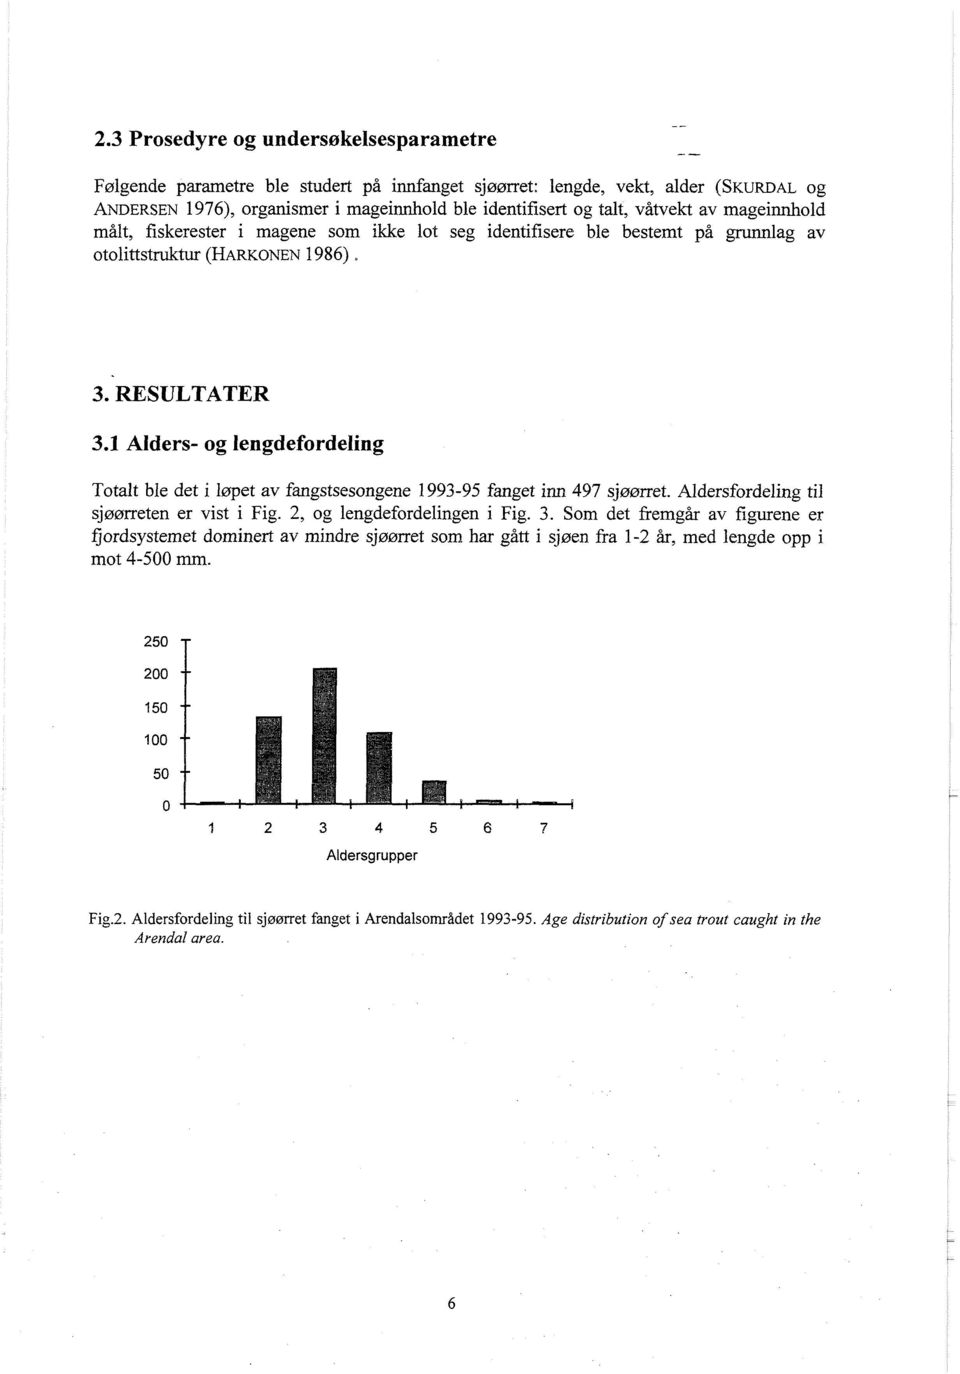 1 Alders- og lengdefordeling Totalt ble det i løpet av fangstsesongene 1993-95 fanget inn 497 sjmrret. Aldersfordeling til sjøørreten er vist i Fig. 2, og lengdefordelingen i Fig. 3.